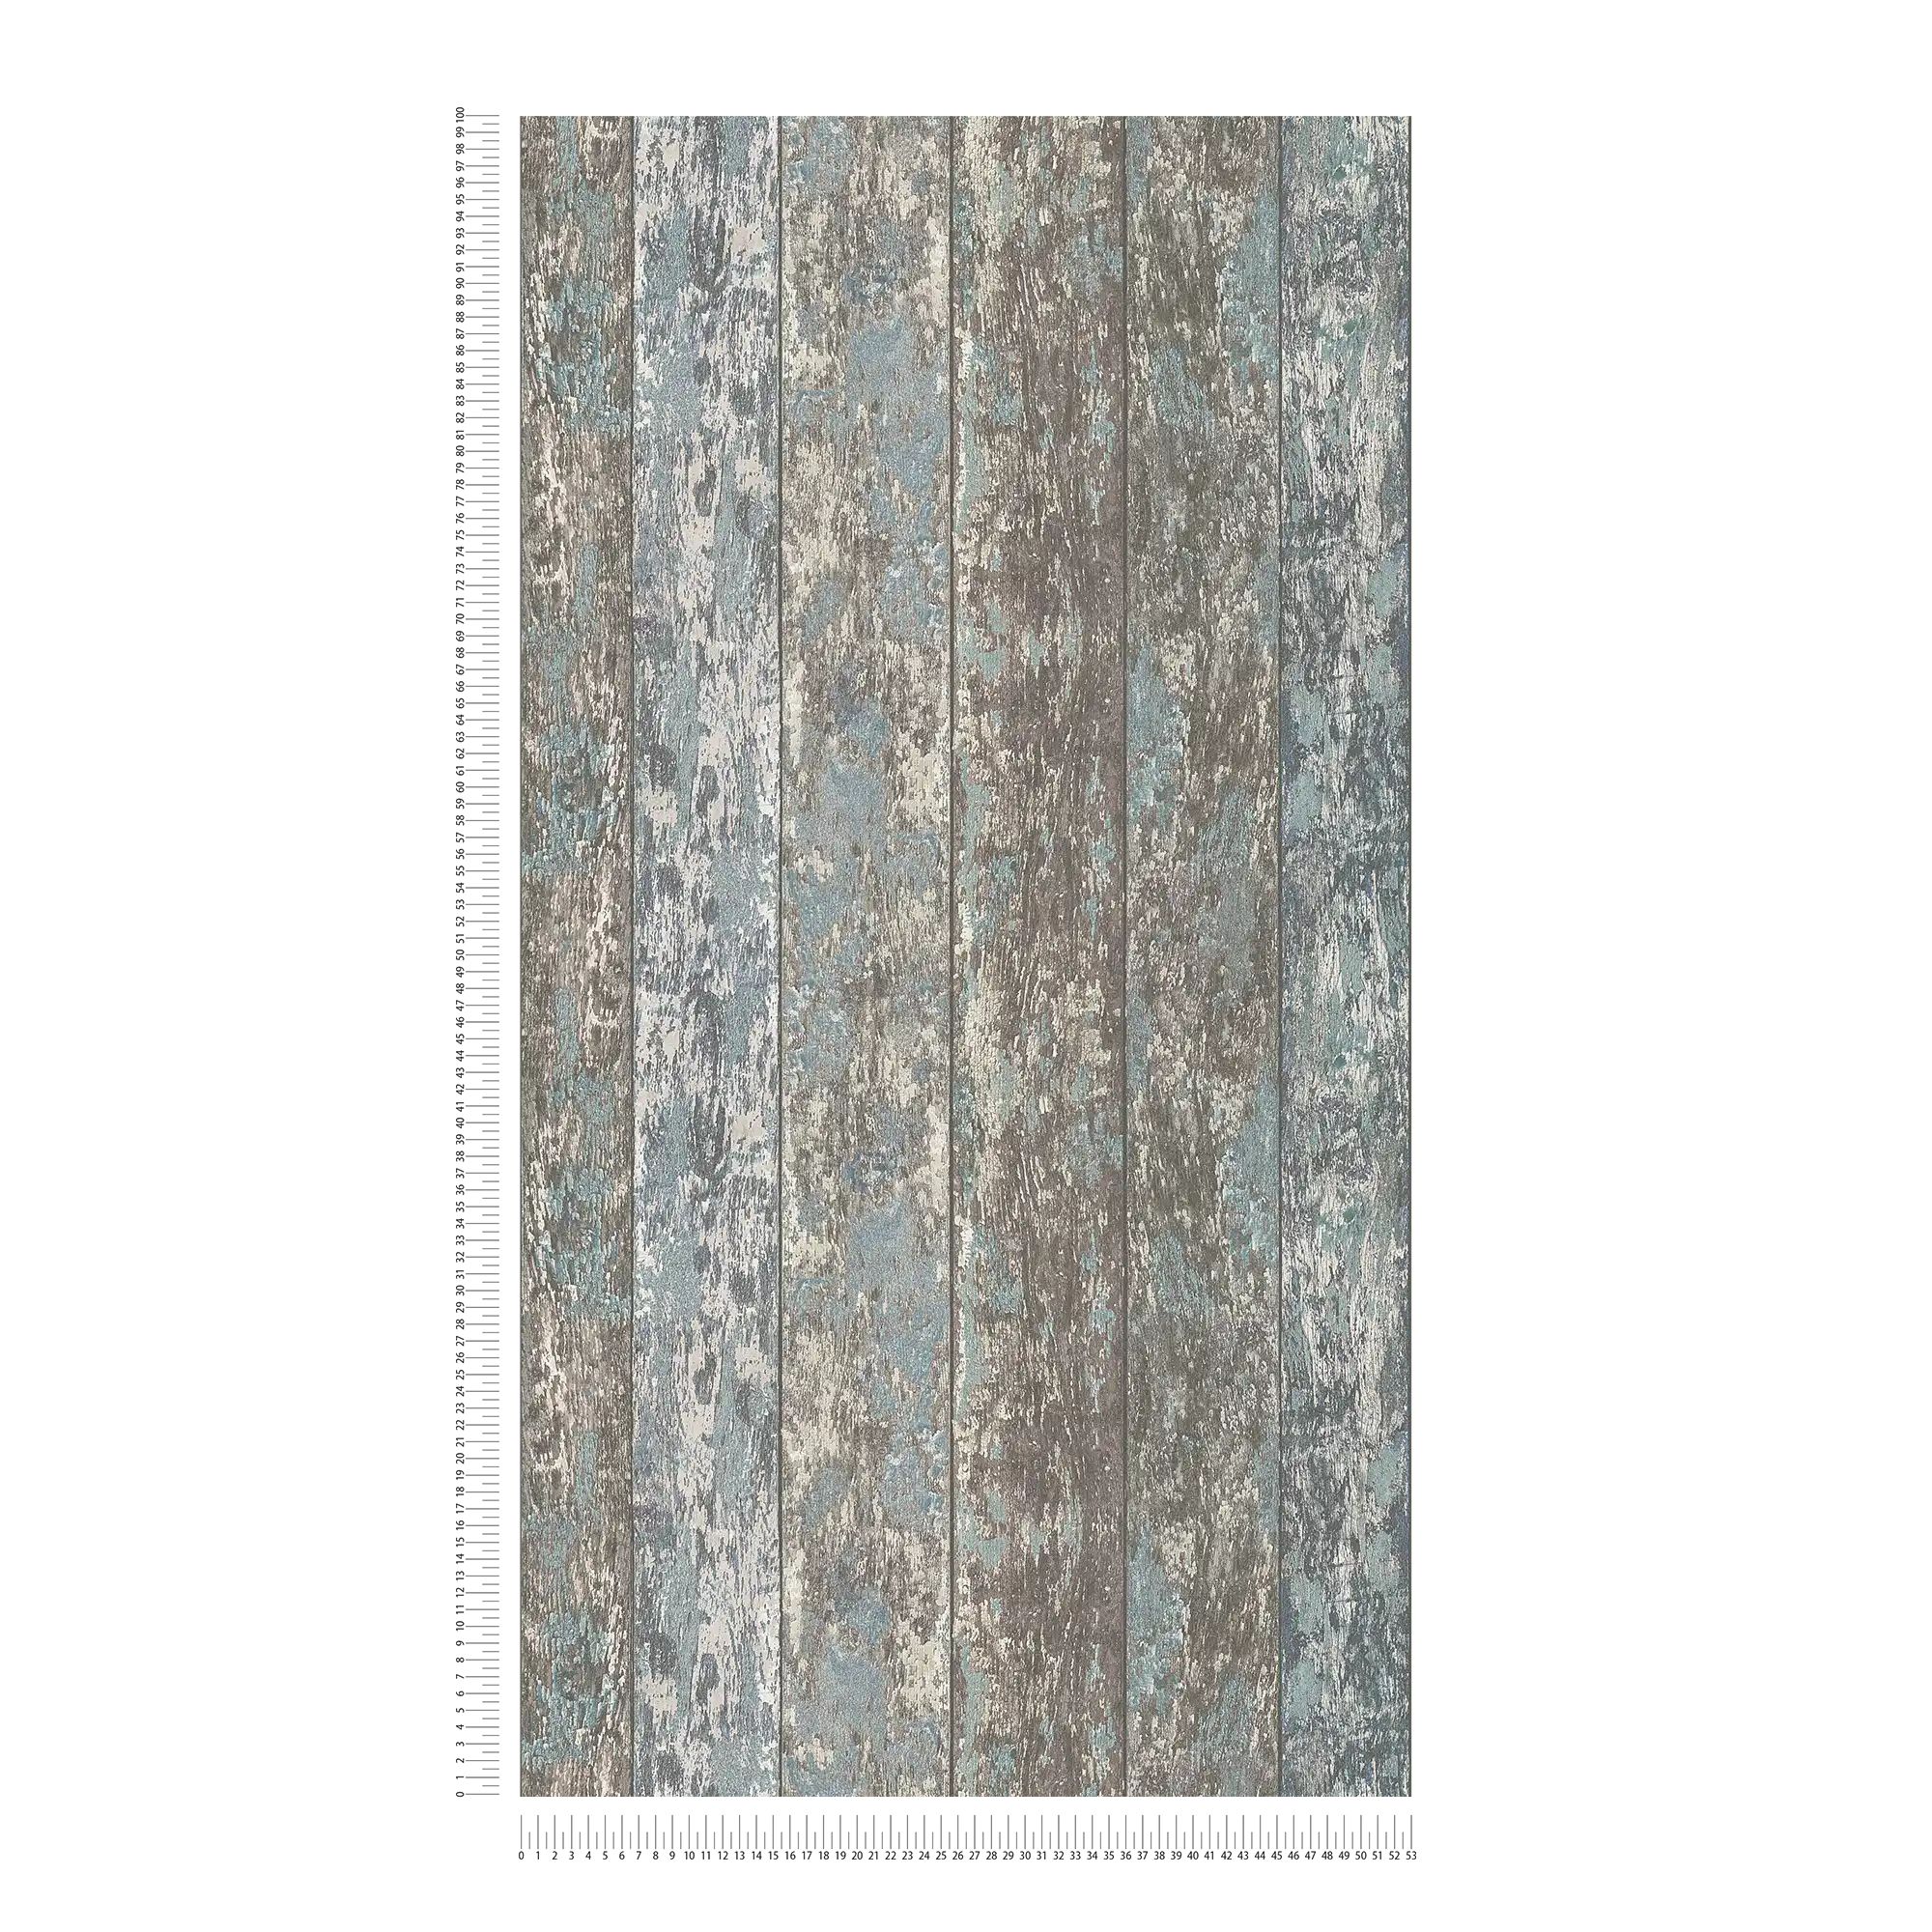             Vliesbehang met houteffect in shabby chic used look - blauw, bruin, grijs
        